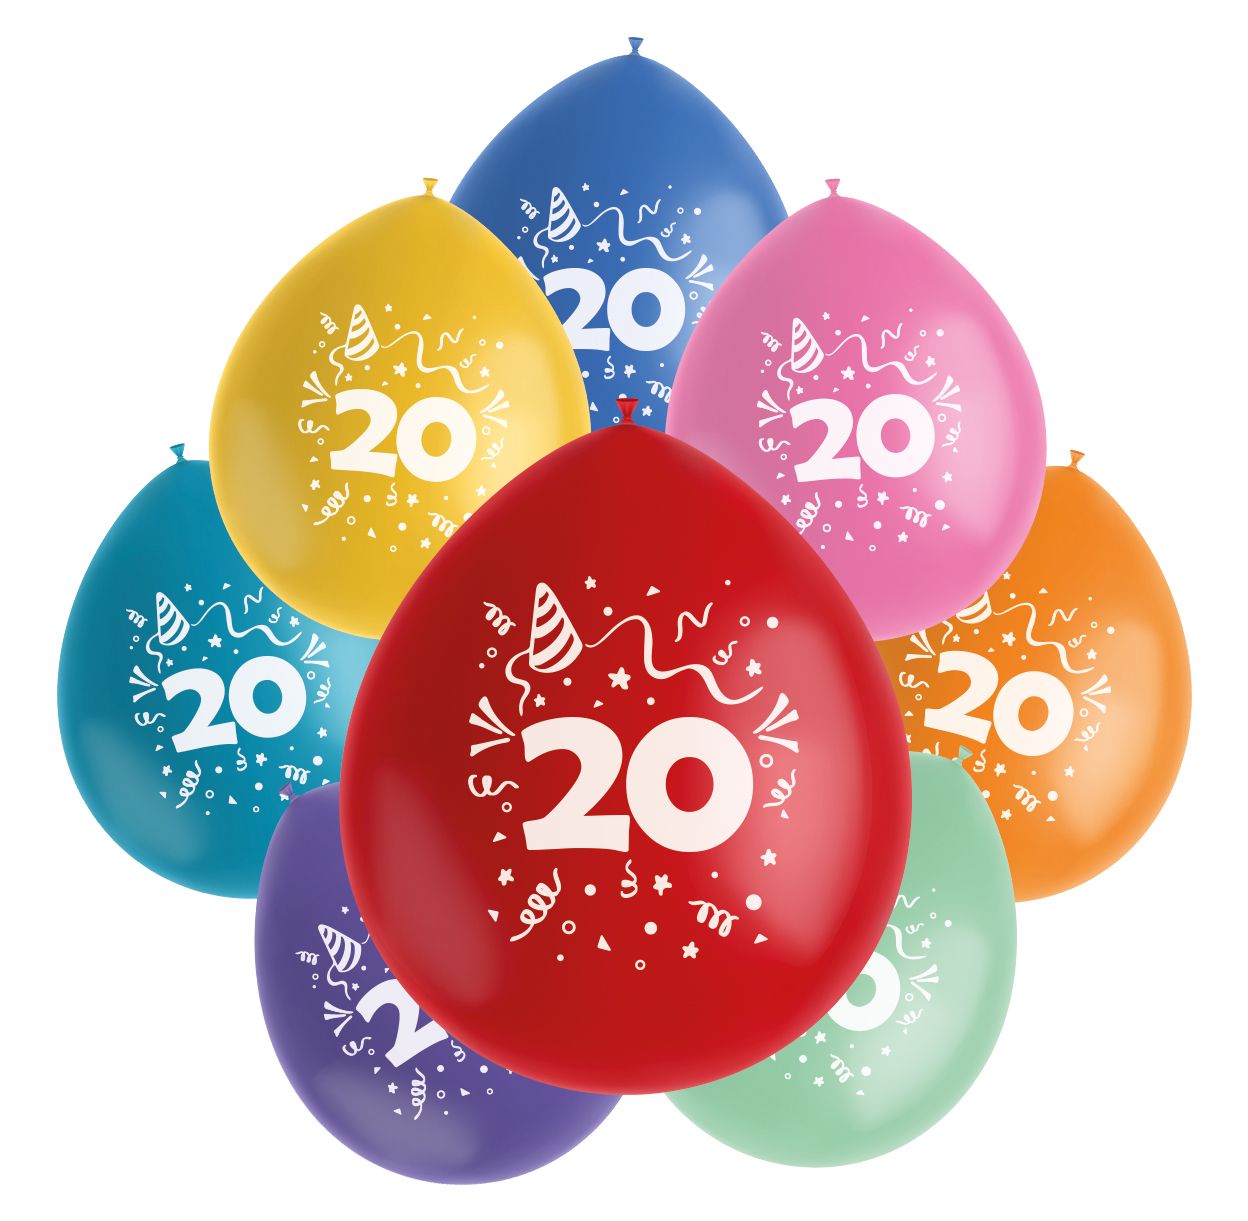 Color pop ballonnen set 20 jaar